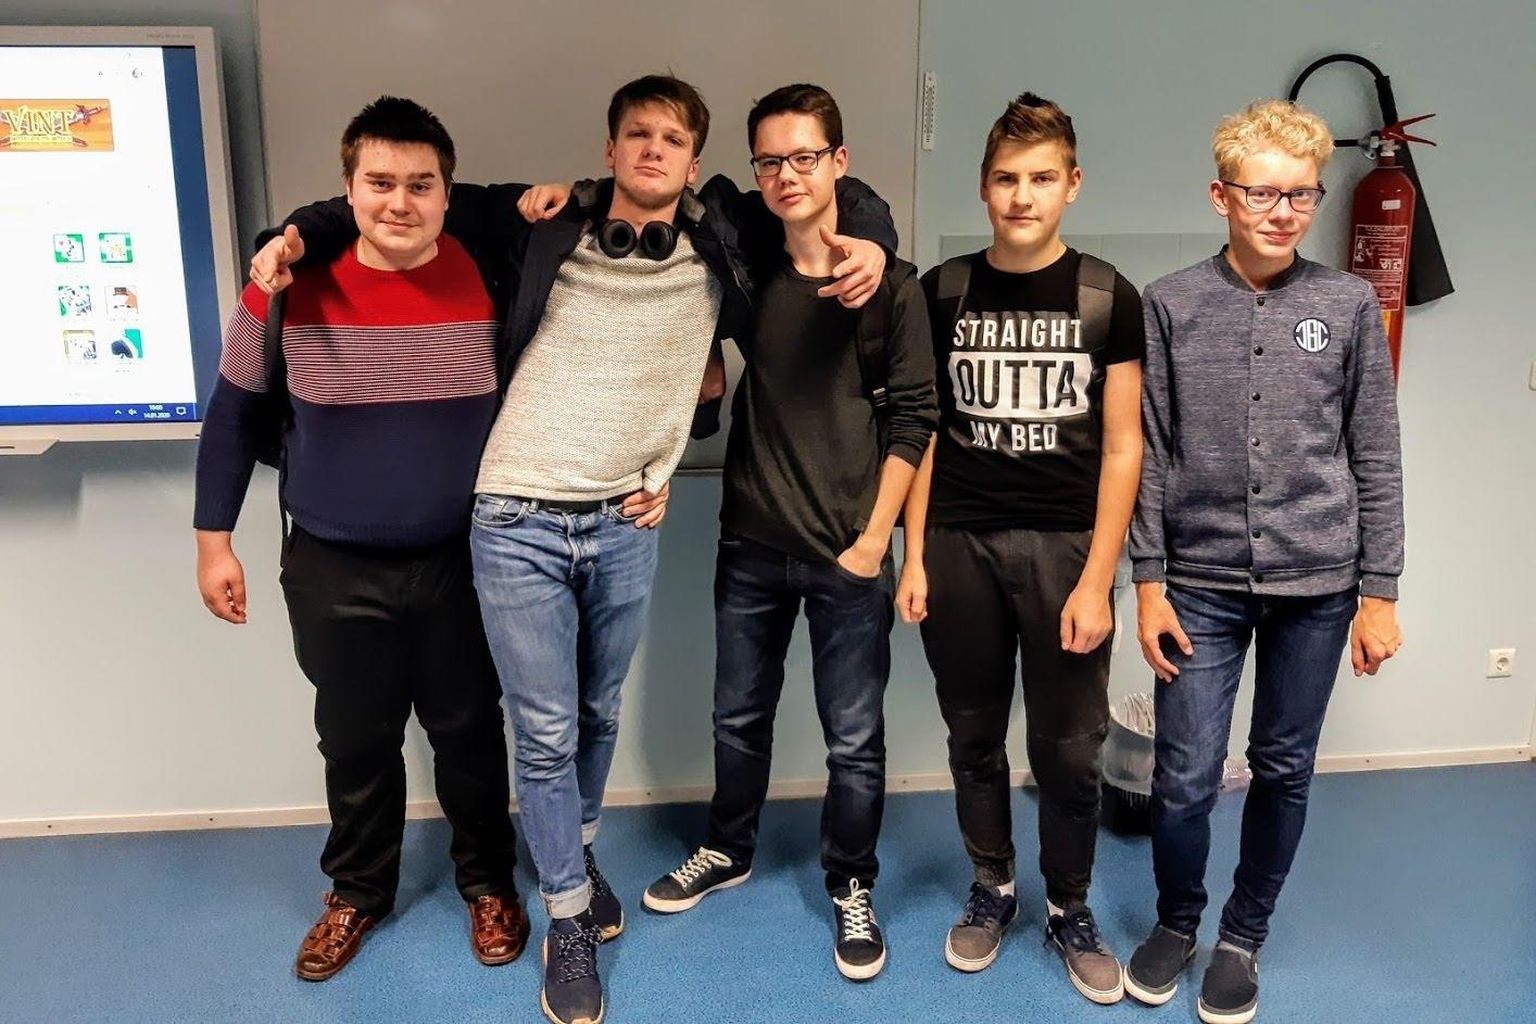 Jakobsoni kooli võistkonnas oli 35 õpilast. Fotol on (vasakult)
Ott Org, Kaupo Kruusmäe, Mattias Nõgols, Kevin Kasik ja Kevin Jürgen.